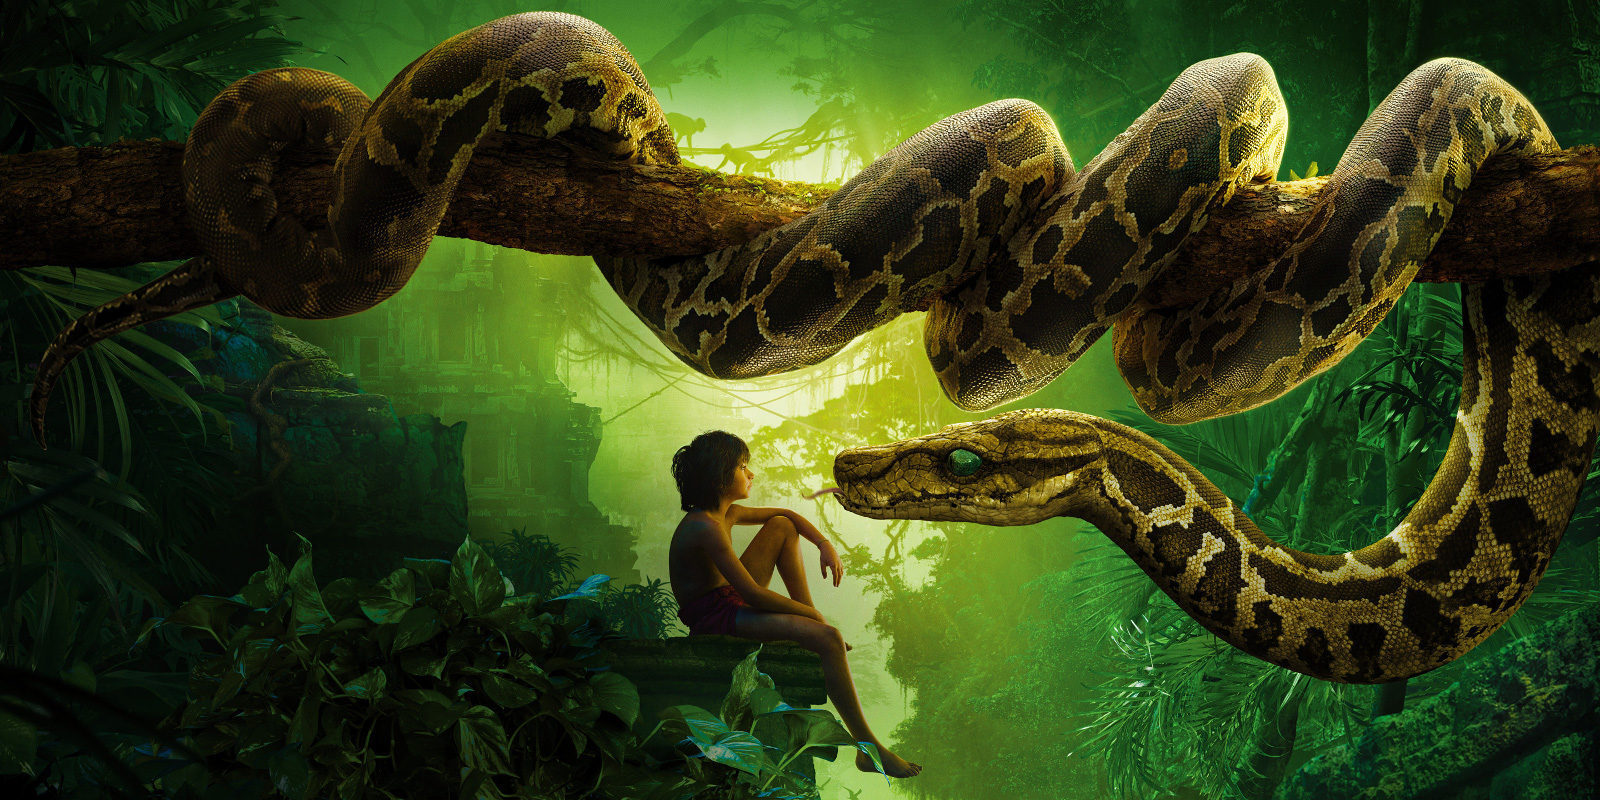 El guionista de la secuela de 'El libro de la selva' habla sobre los aspectos importantes de la película